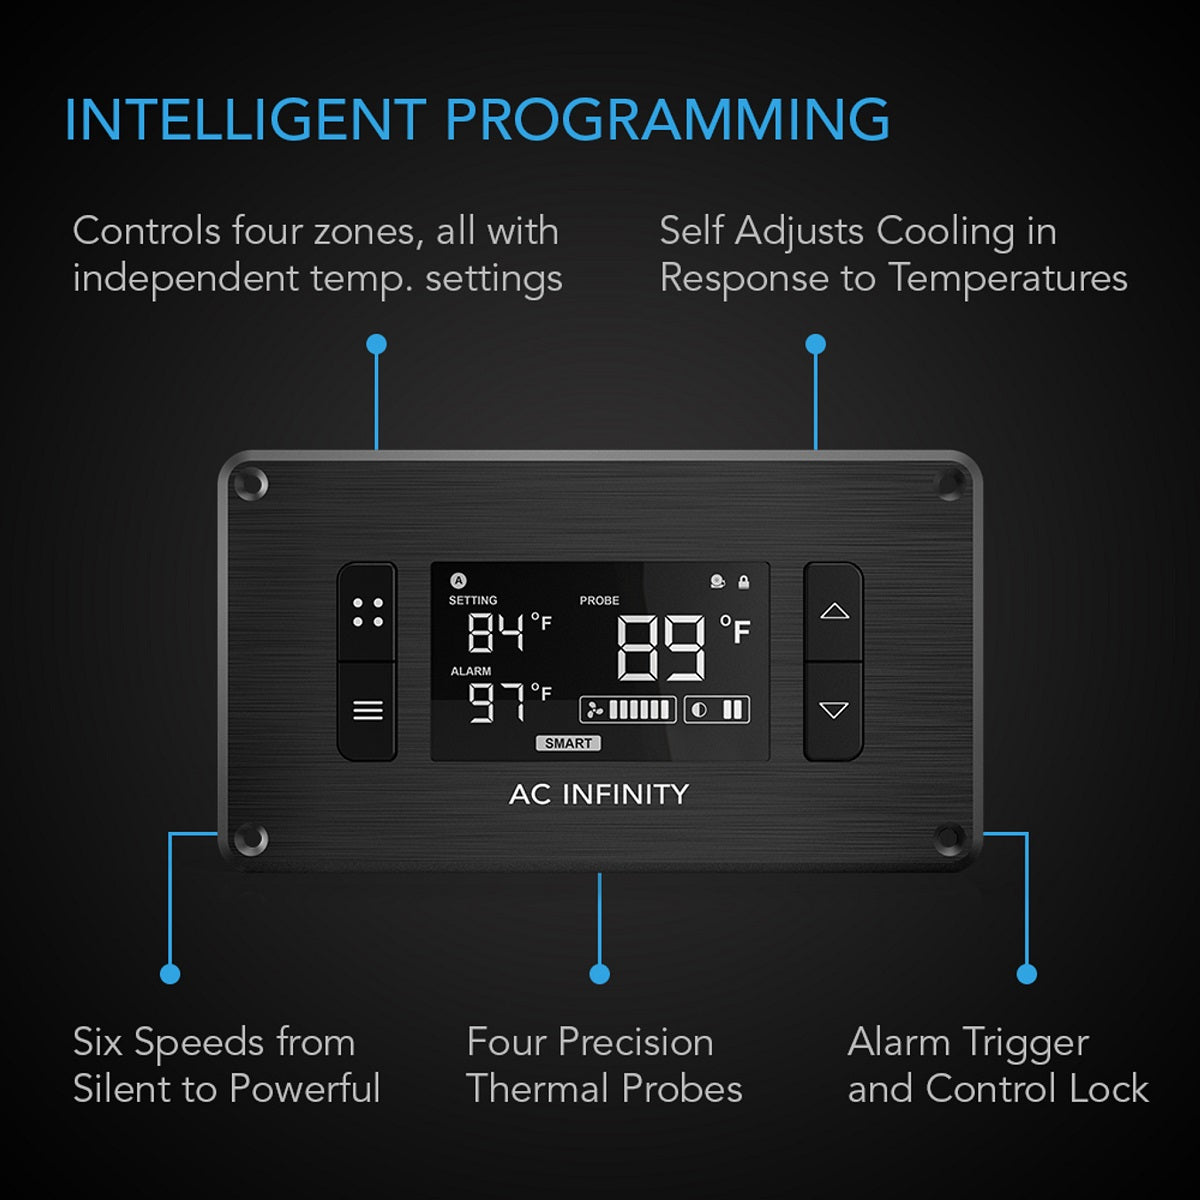 AC Infinity Controller 8 - Contrôle la température et l'humidité sur 4 zones